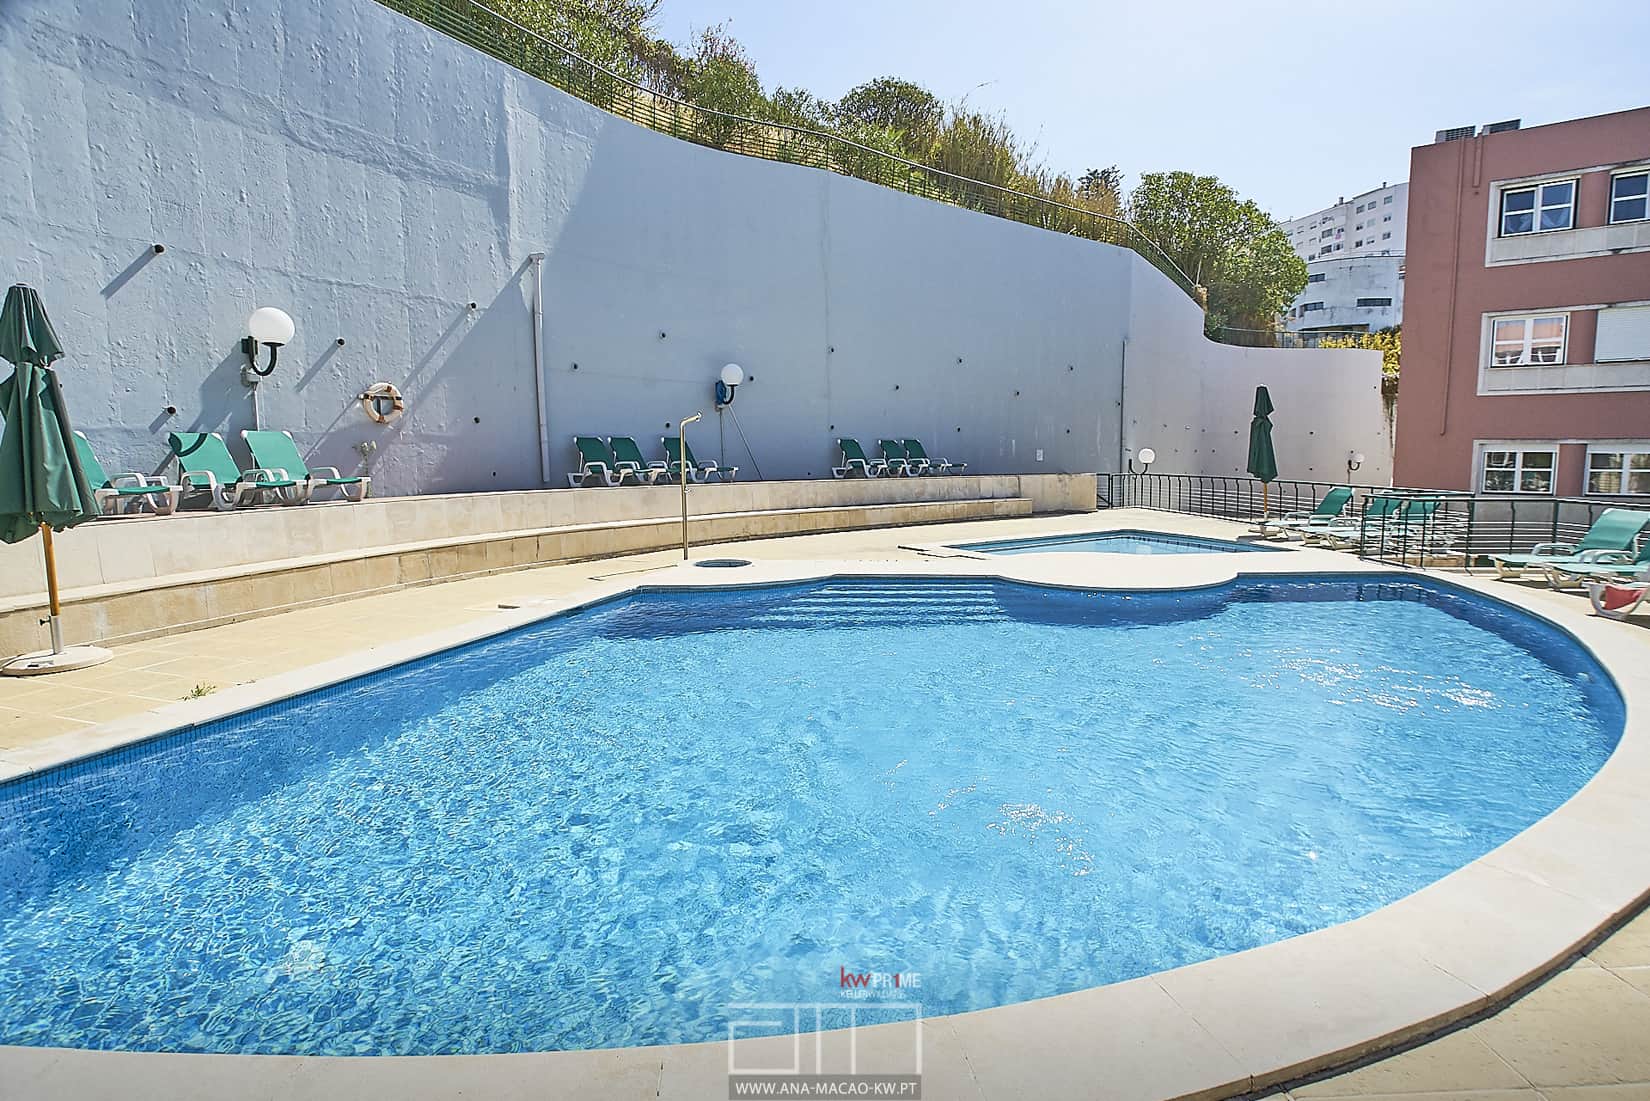 Swimming pool of condominium